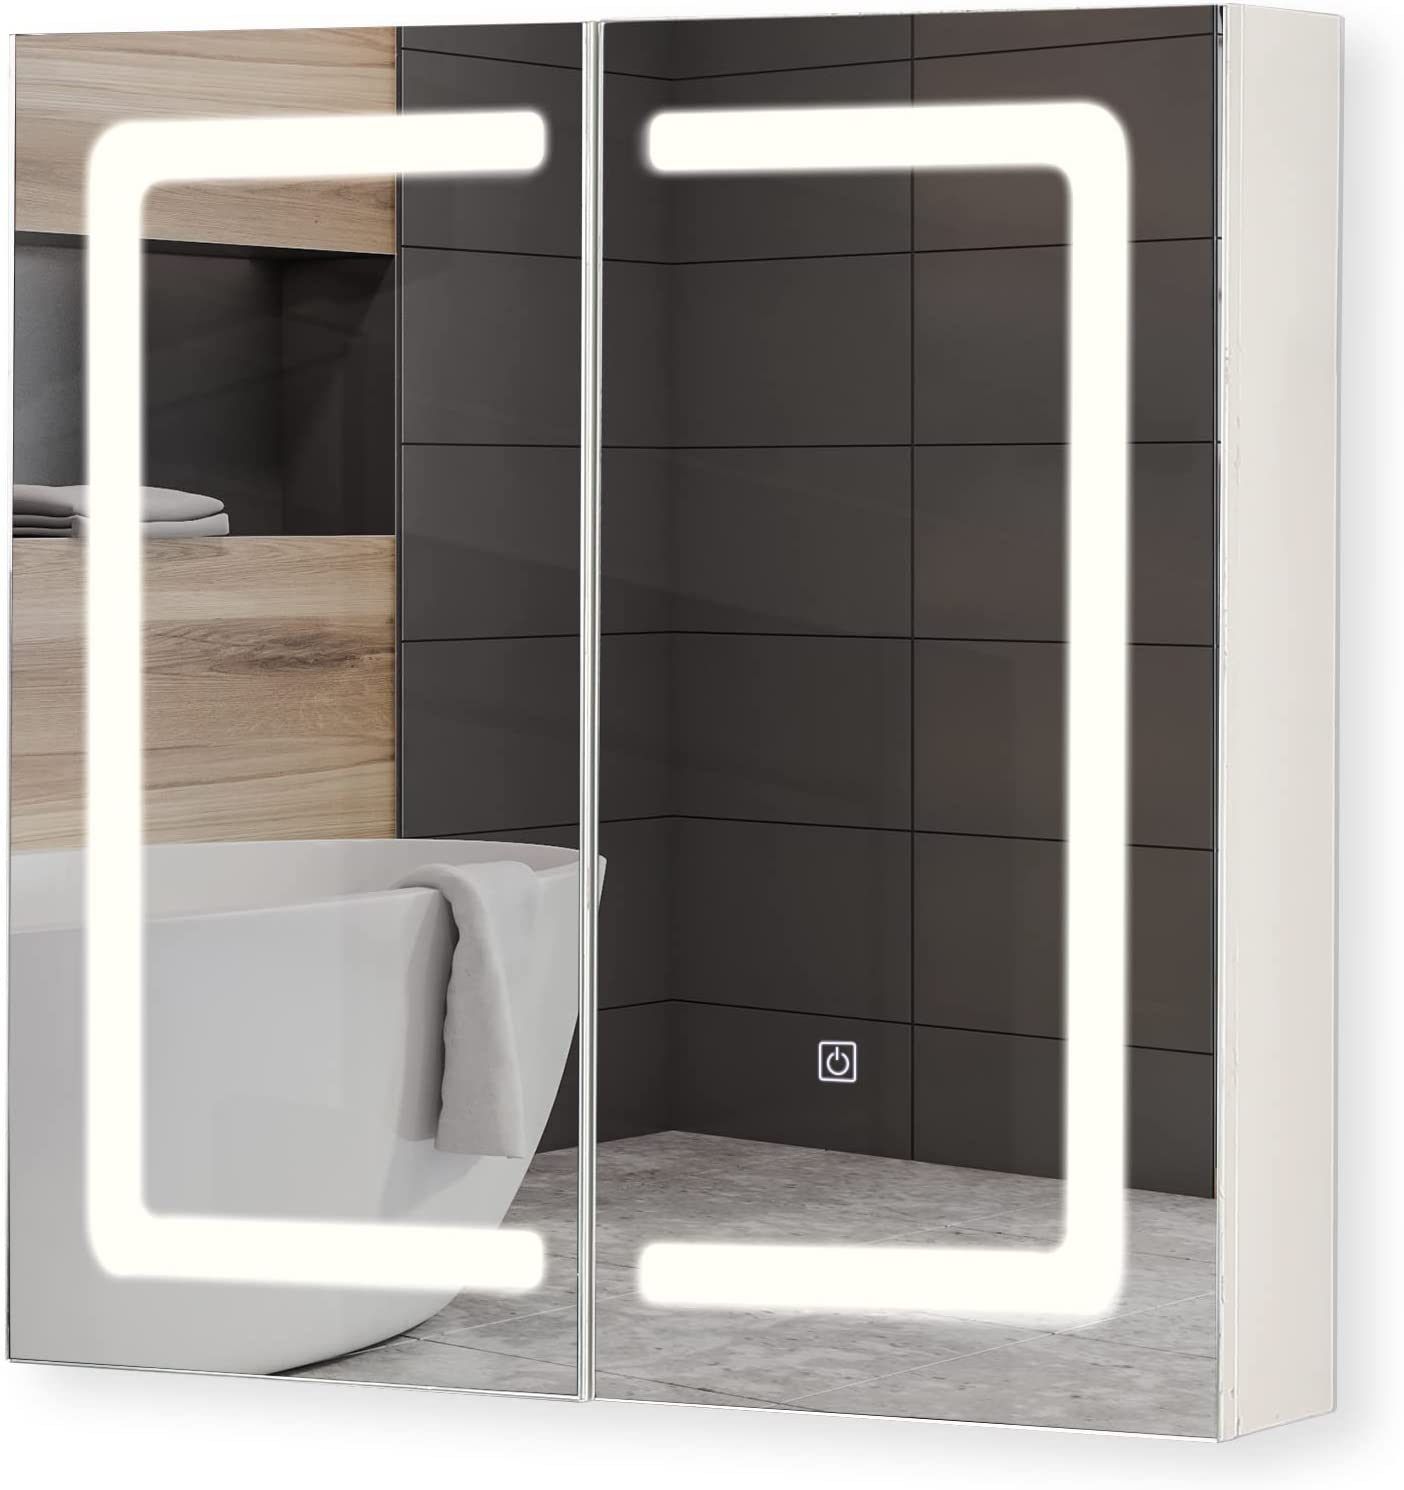 Badkamerspiegel met led verlichting – Met deuren – 65 x 65 x 13 cm – Wit